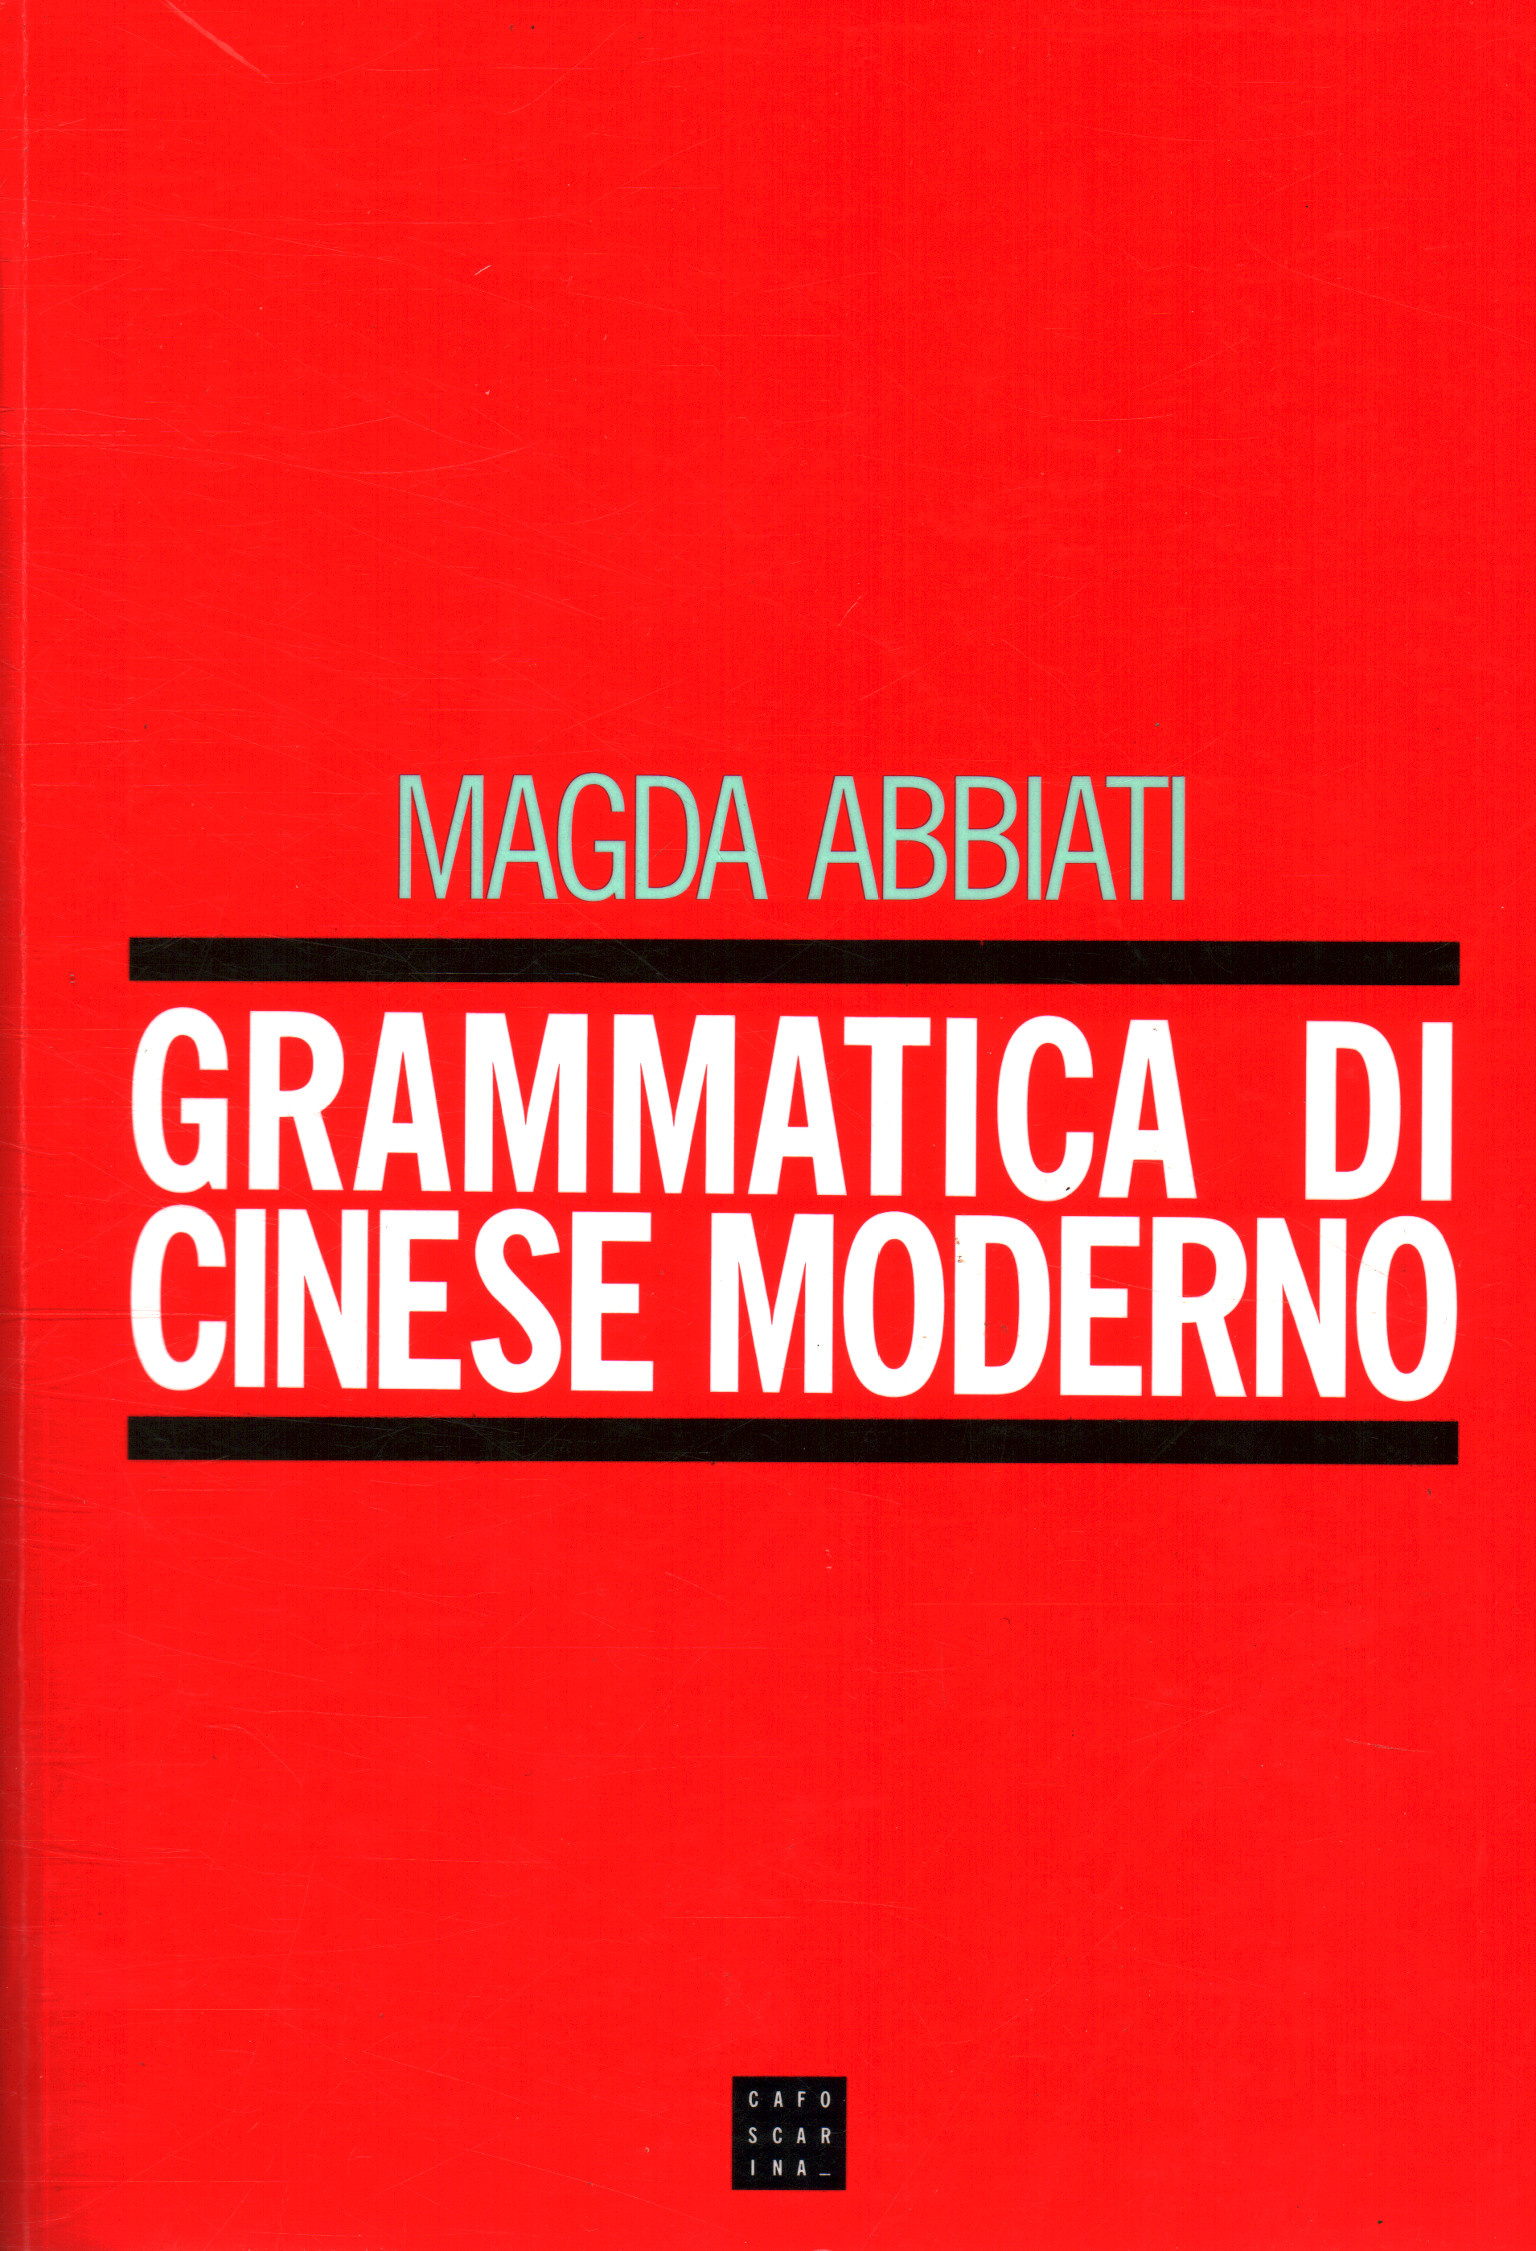 Moderne chinesische Grammatik, Magda Abbiati